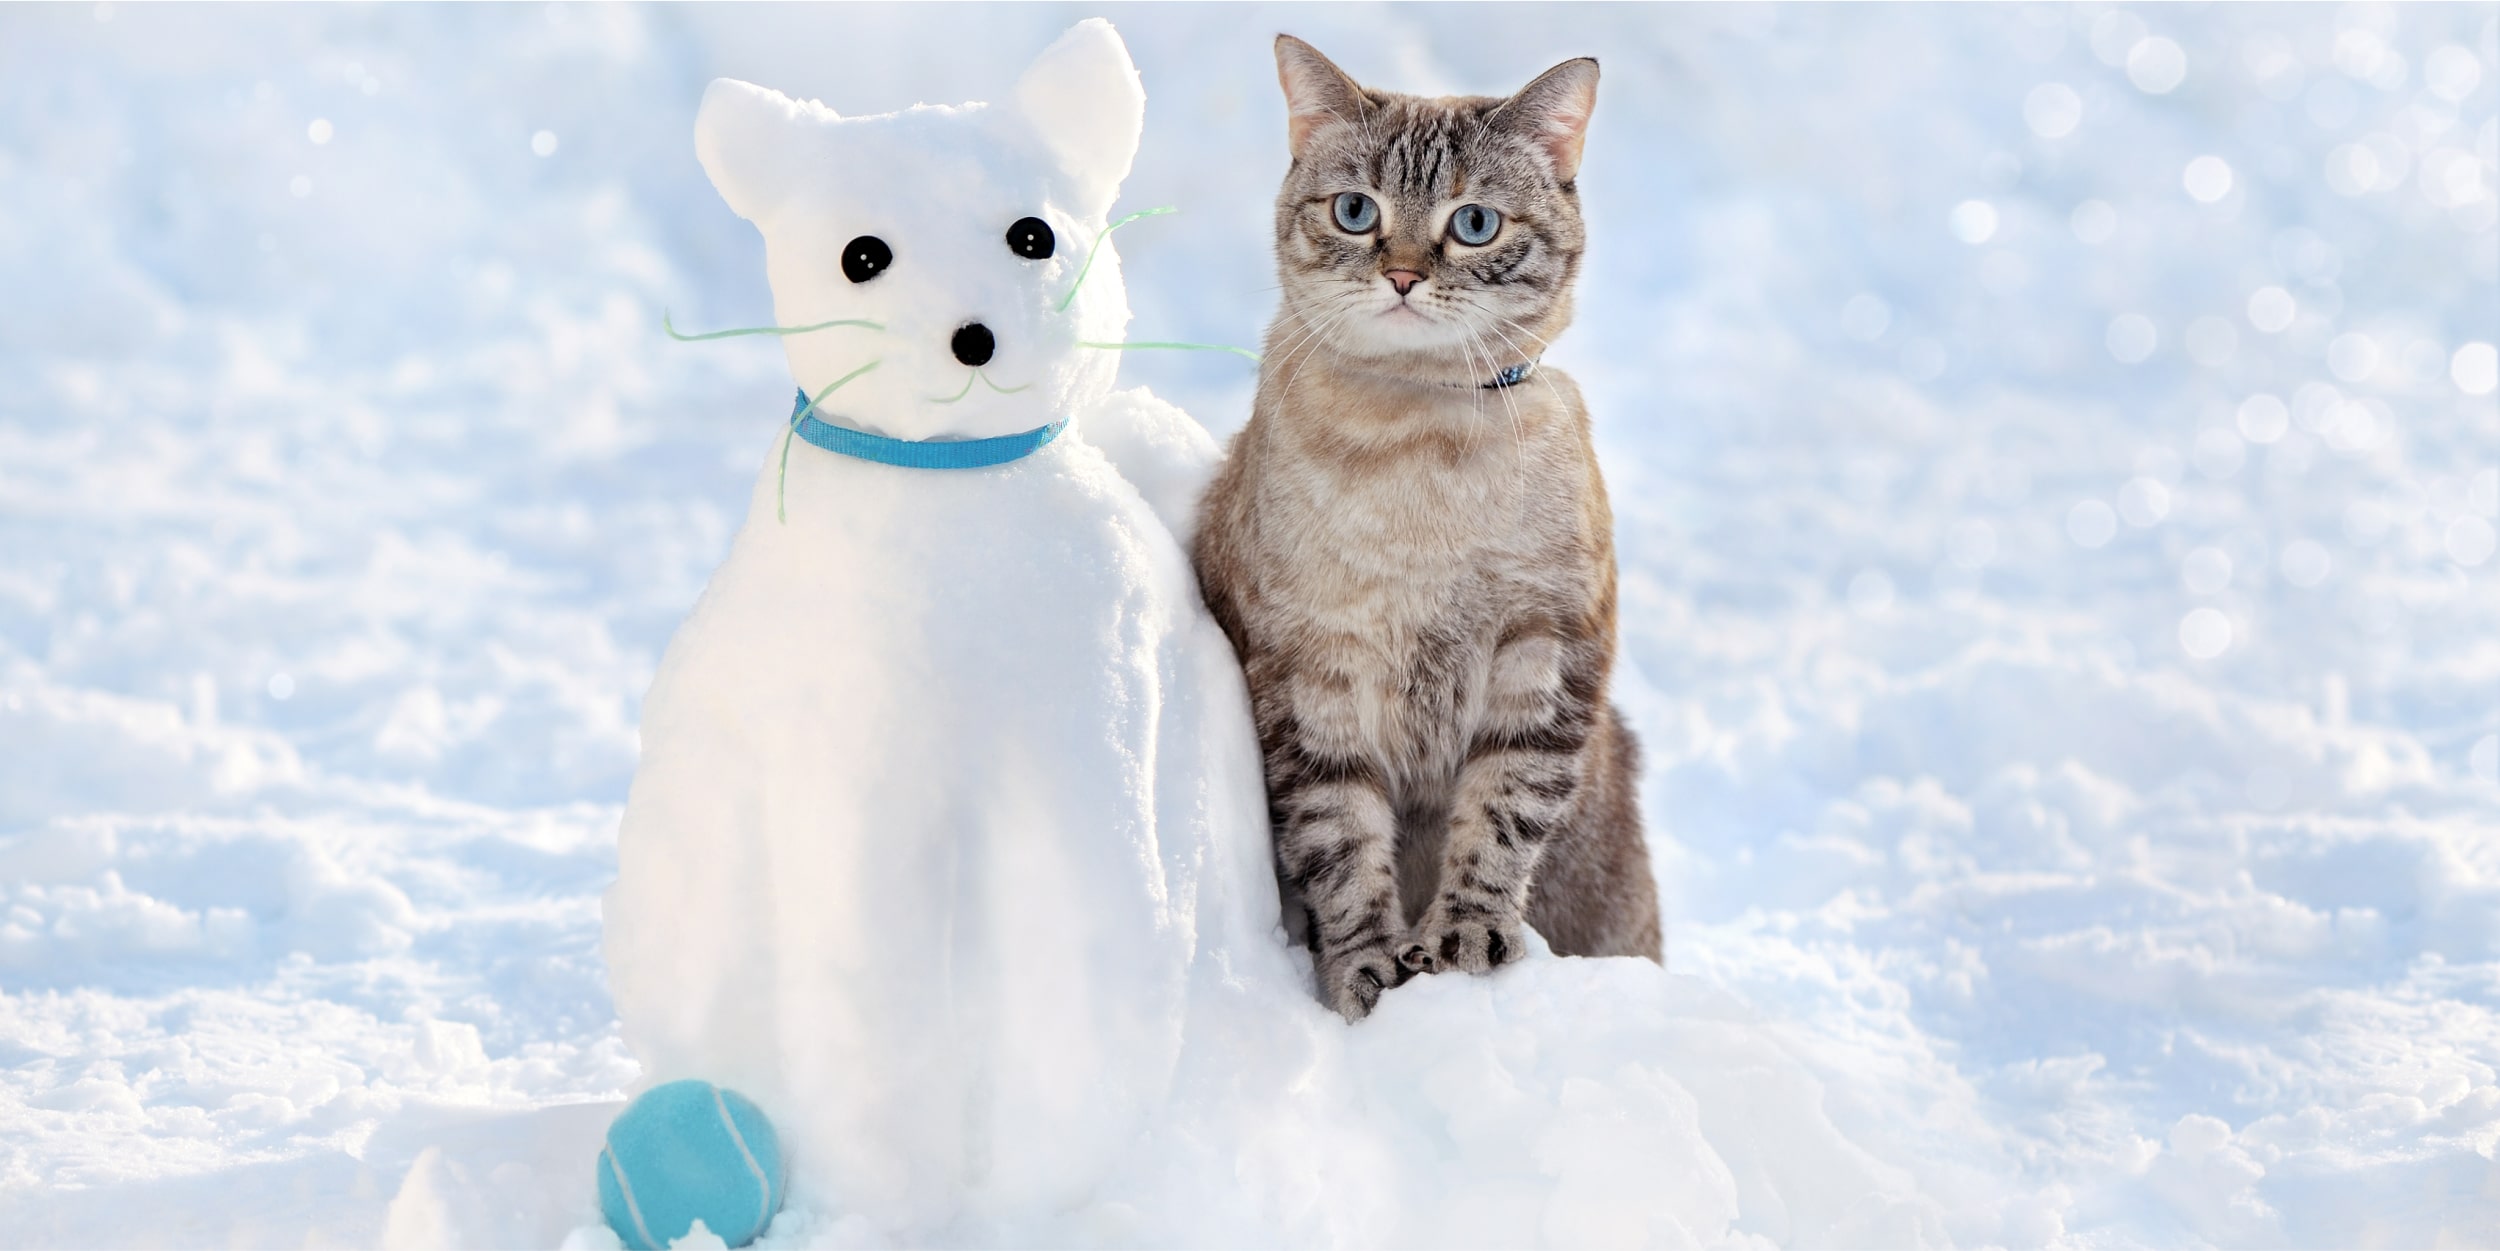 20 снежных фигур, которые легко сделать самому и с детьми - Лайфхакер